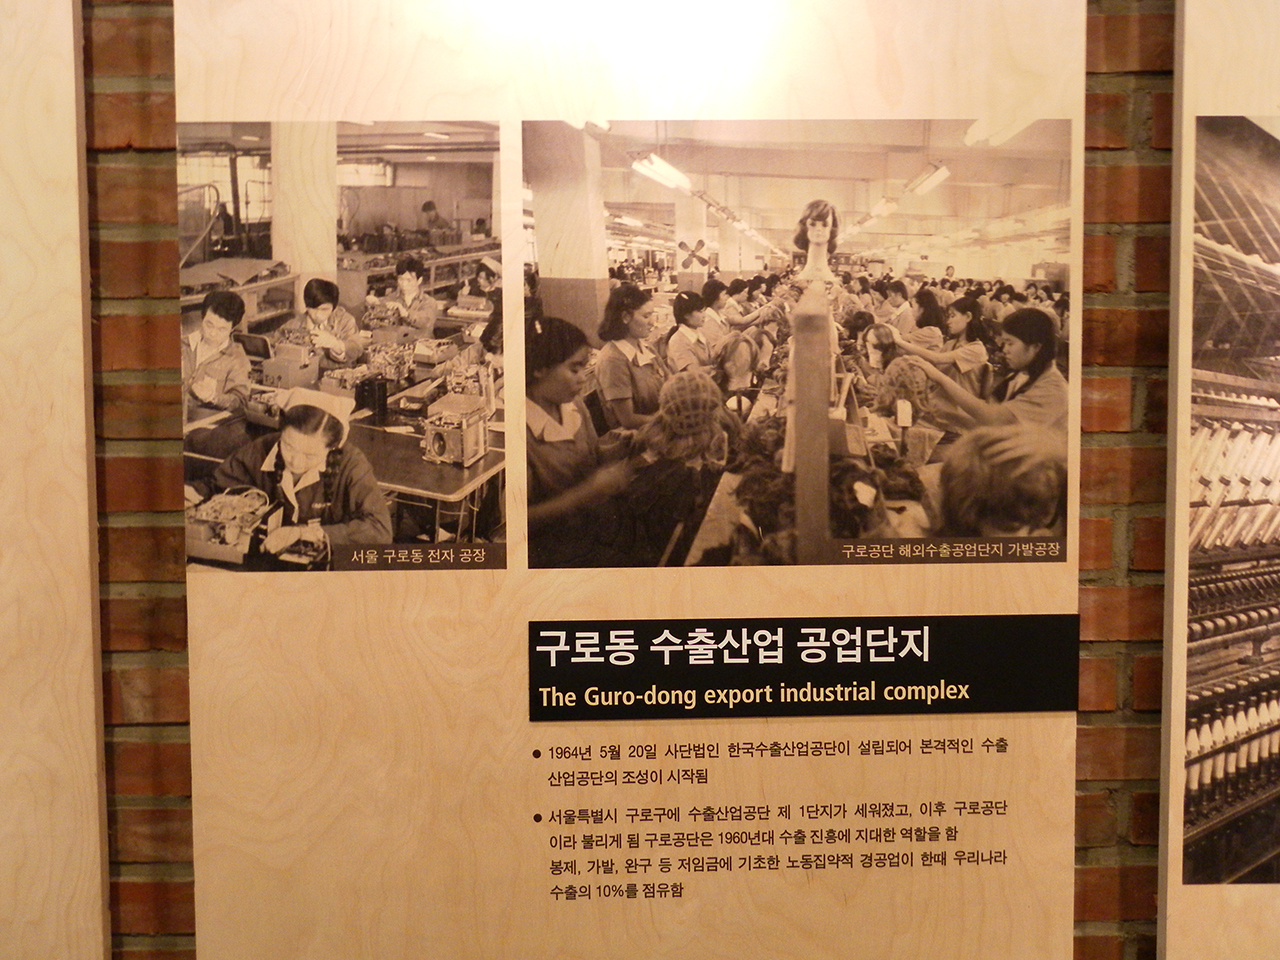  구로공단. 서울시 마포구 상암동의 박정희대통령기념도서관에서 찍은 사진.